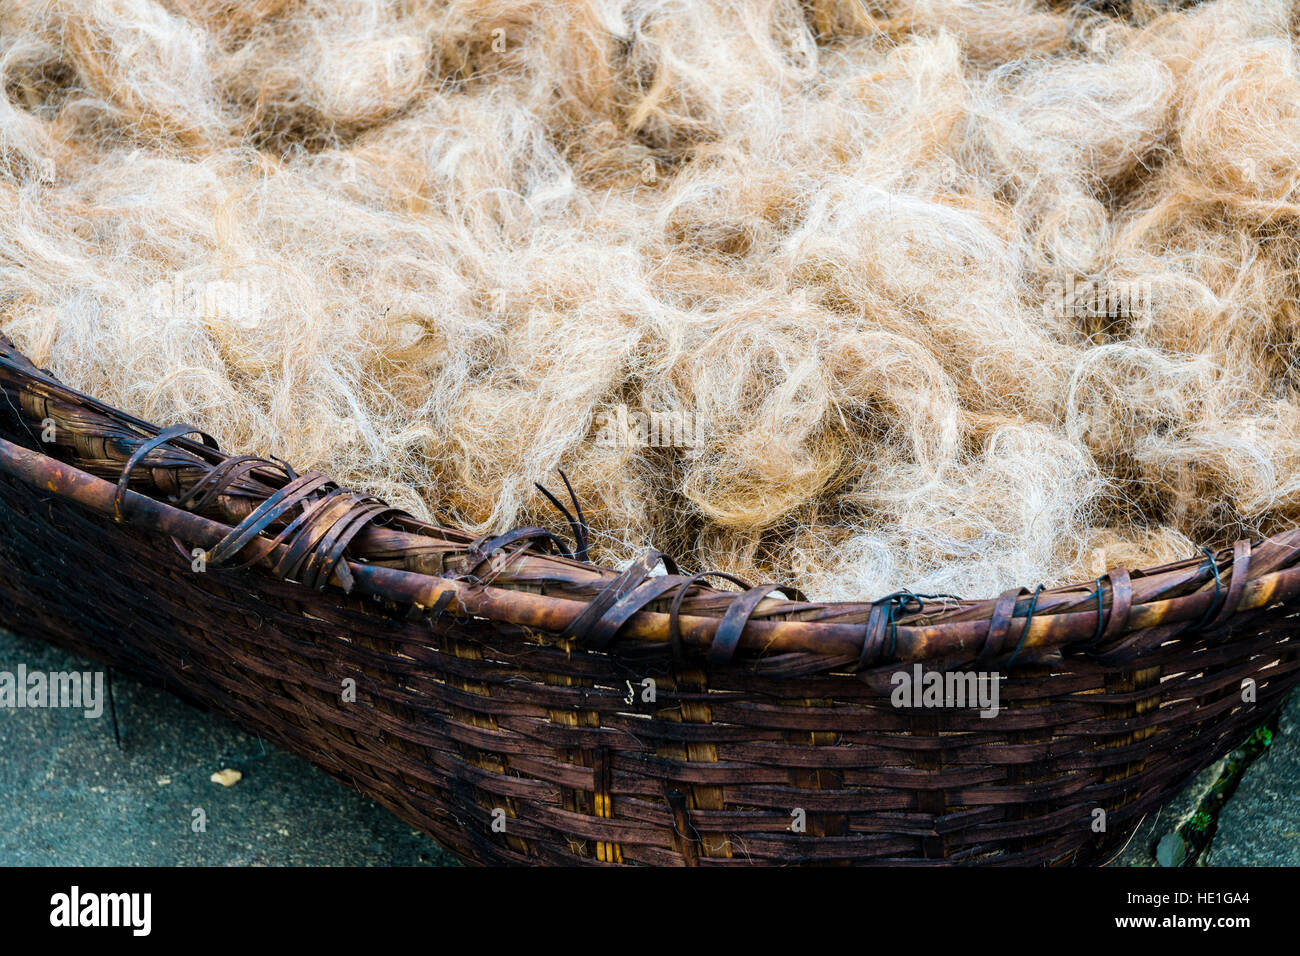 Rohstoff Schafwolle in einem geflochtenen Korb, bereit für die Spinnerei Stockfoto